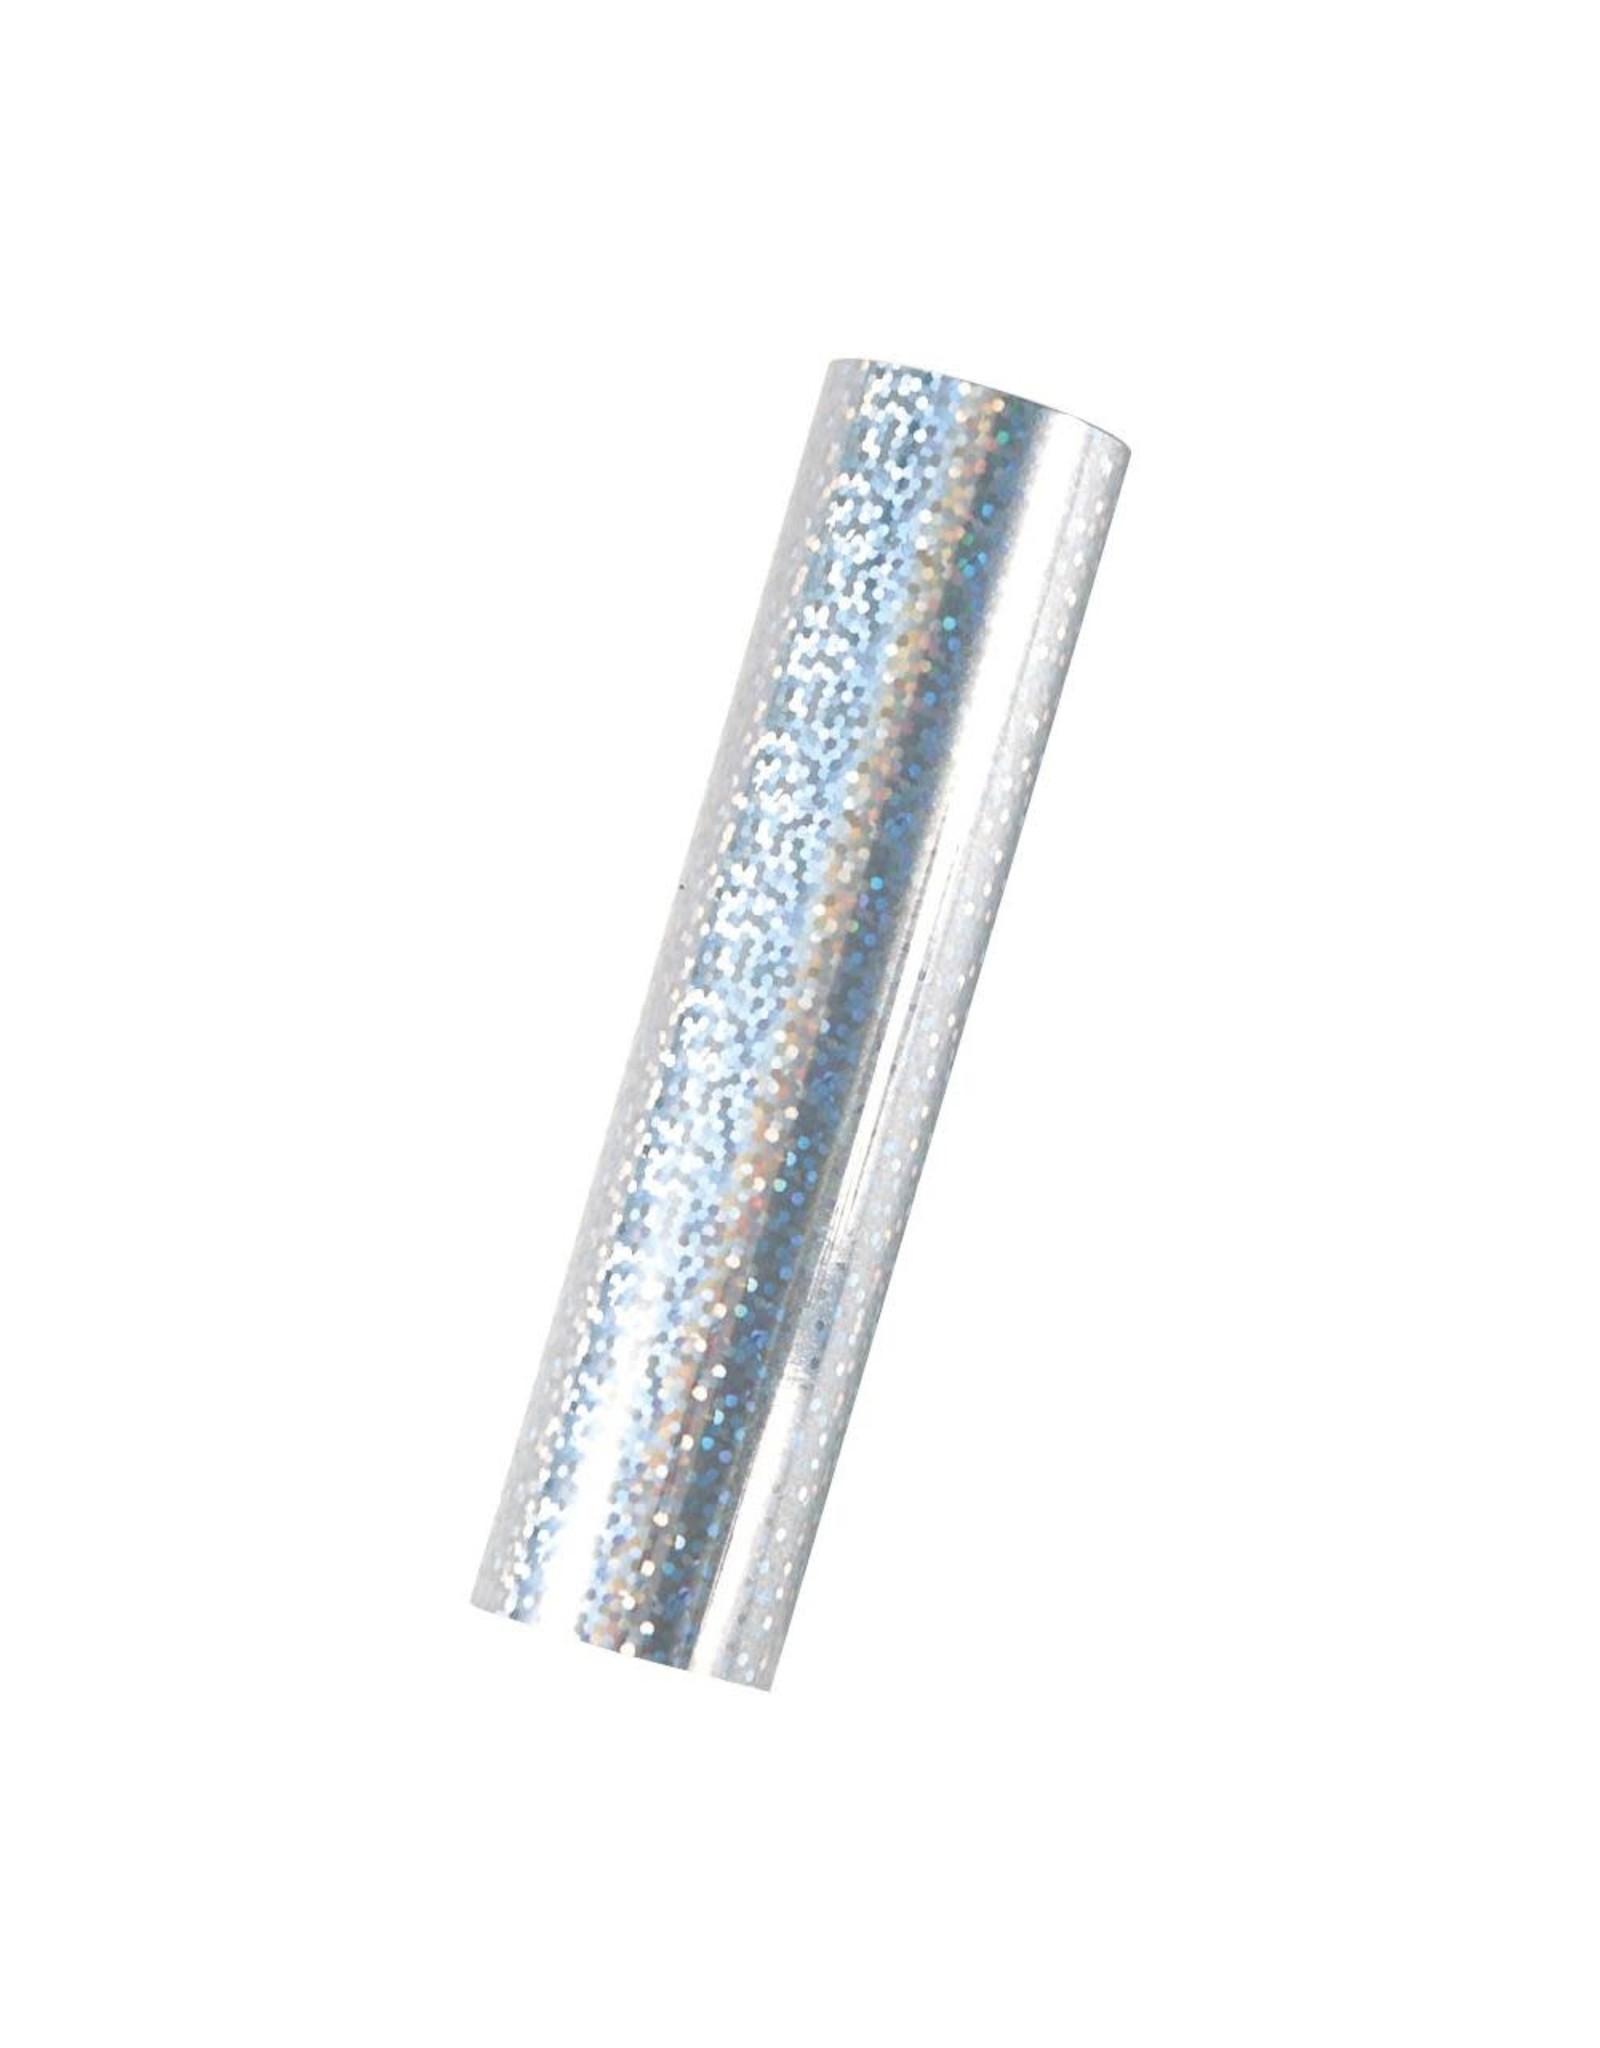 Spellbinders Glimmer Hot Foil - Speckled Prism